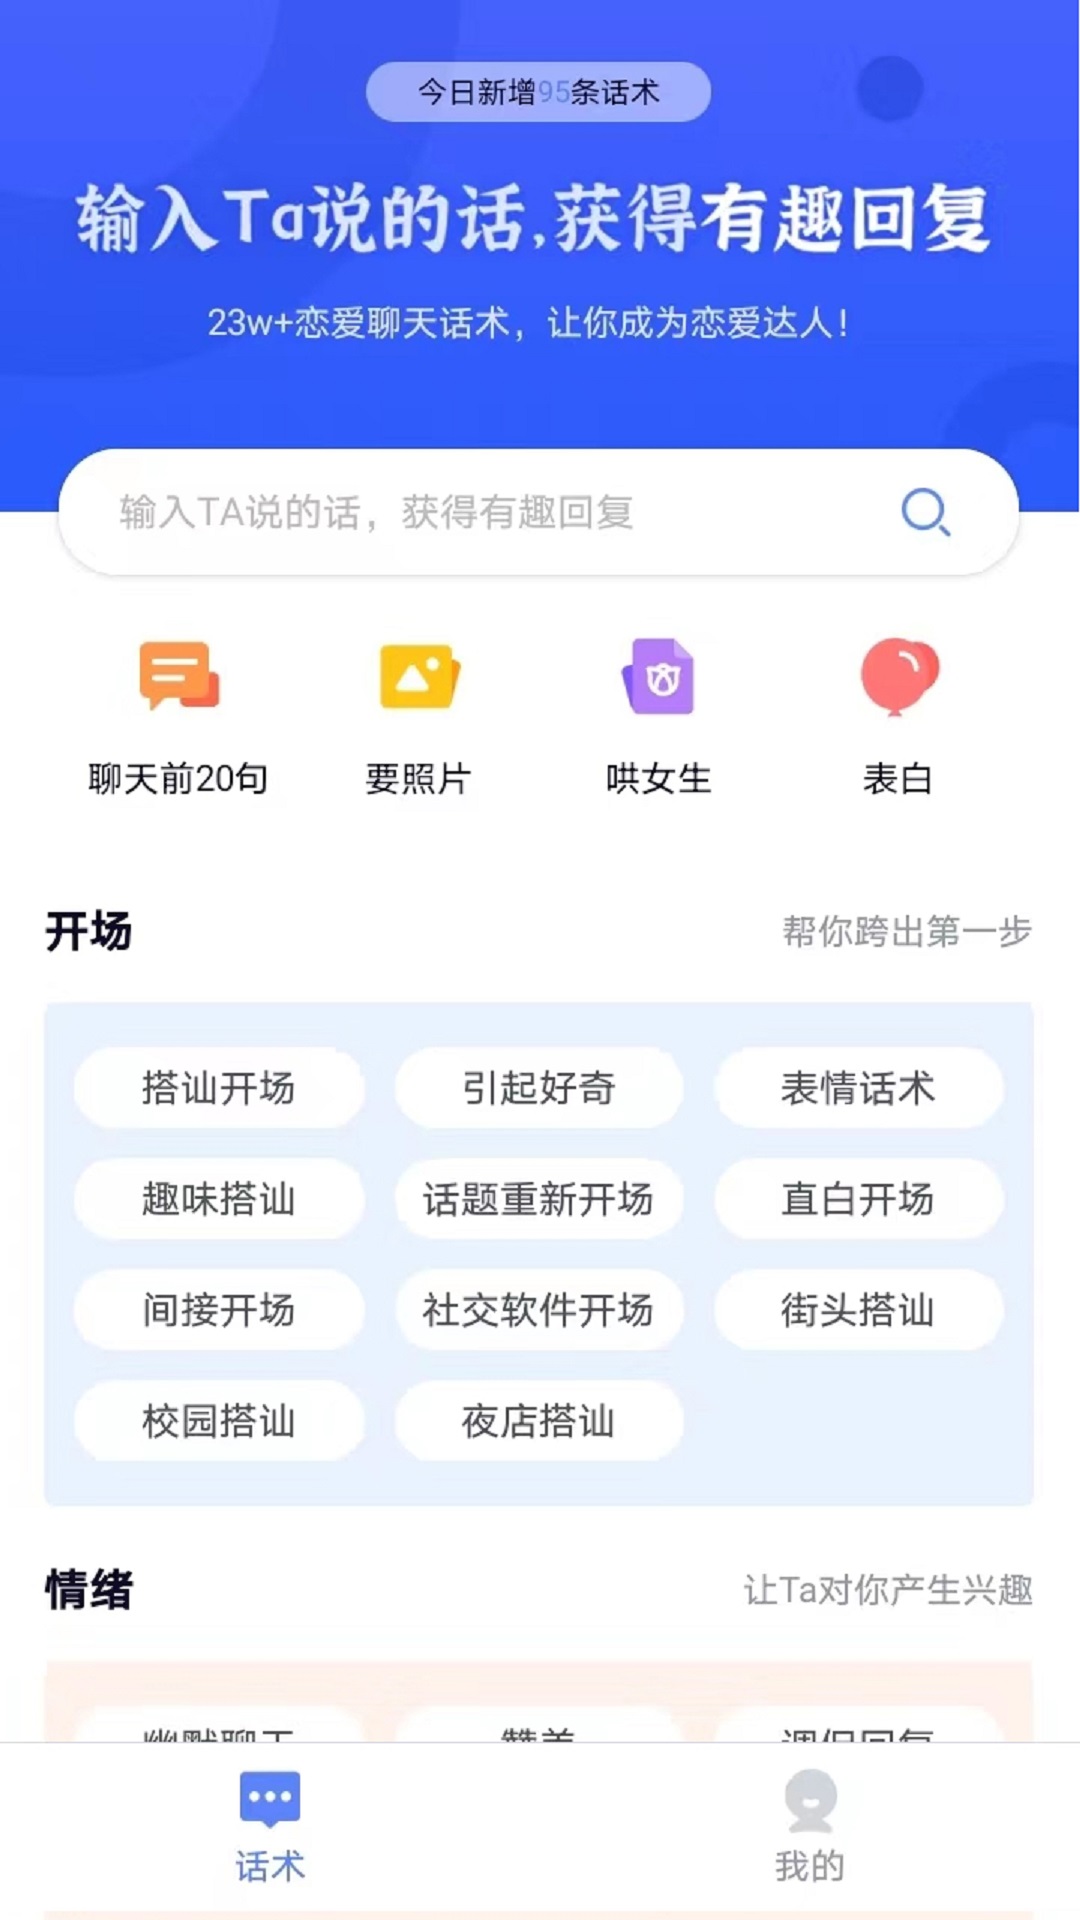 恋习册恋爱小帮手app手机版 v1.0.0